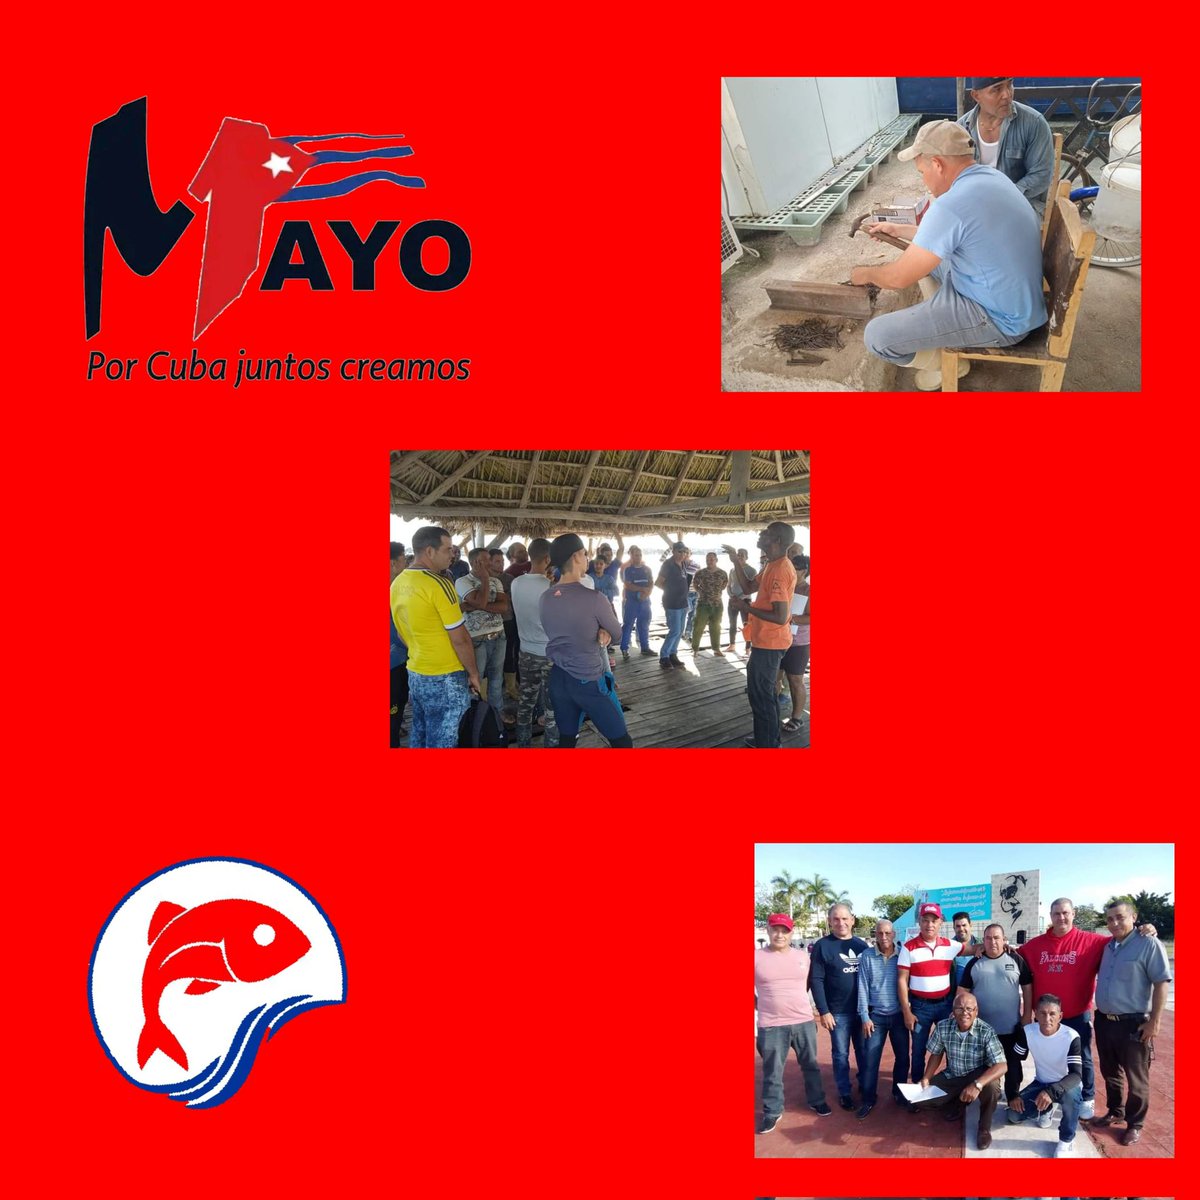 #PescadoresPorLaProductividad en #CiegodeAvila diremos presente el próximo #1roDeMayo , para patentizar una vez más las razones que defiende la mayor de las Antillas ante el mundo y el respaldo mayoritario de los cubanos a su Revolución. #PorCubaJuntosCreamos